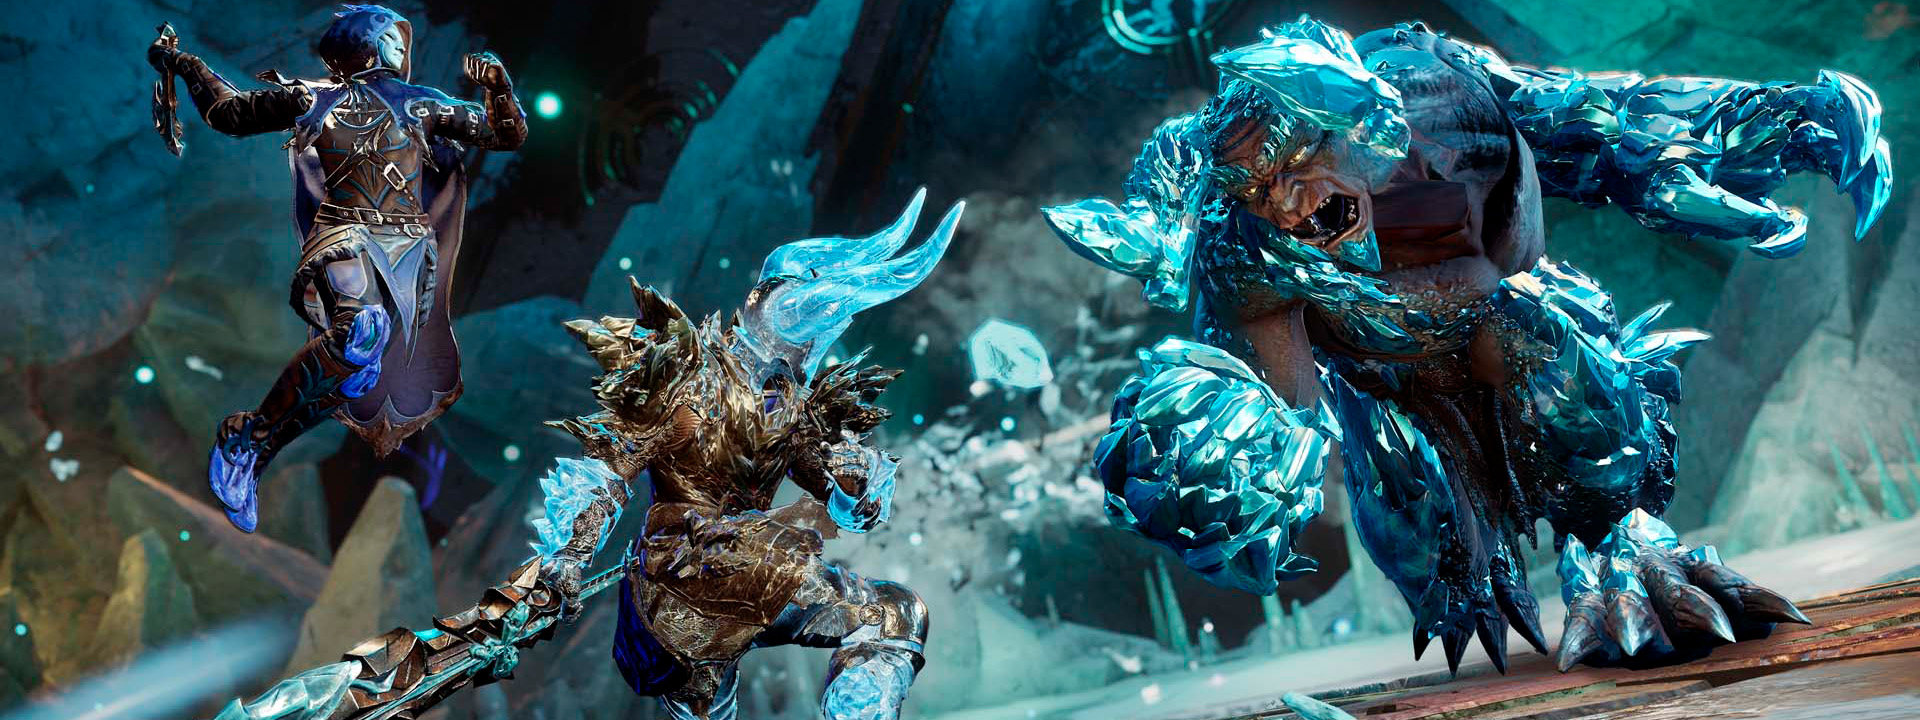 Aventureros luchan contra enemigos de hielo con varias armas en la expedición de Lago Glacial.